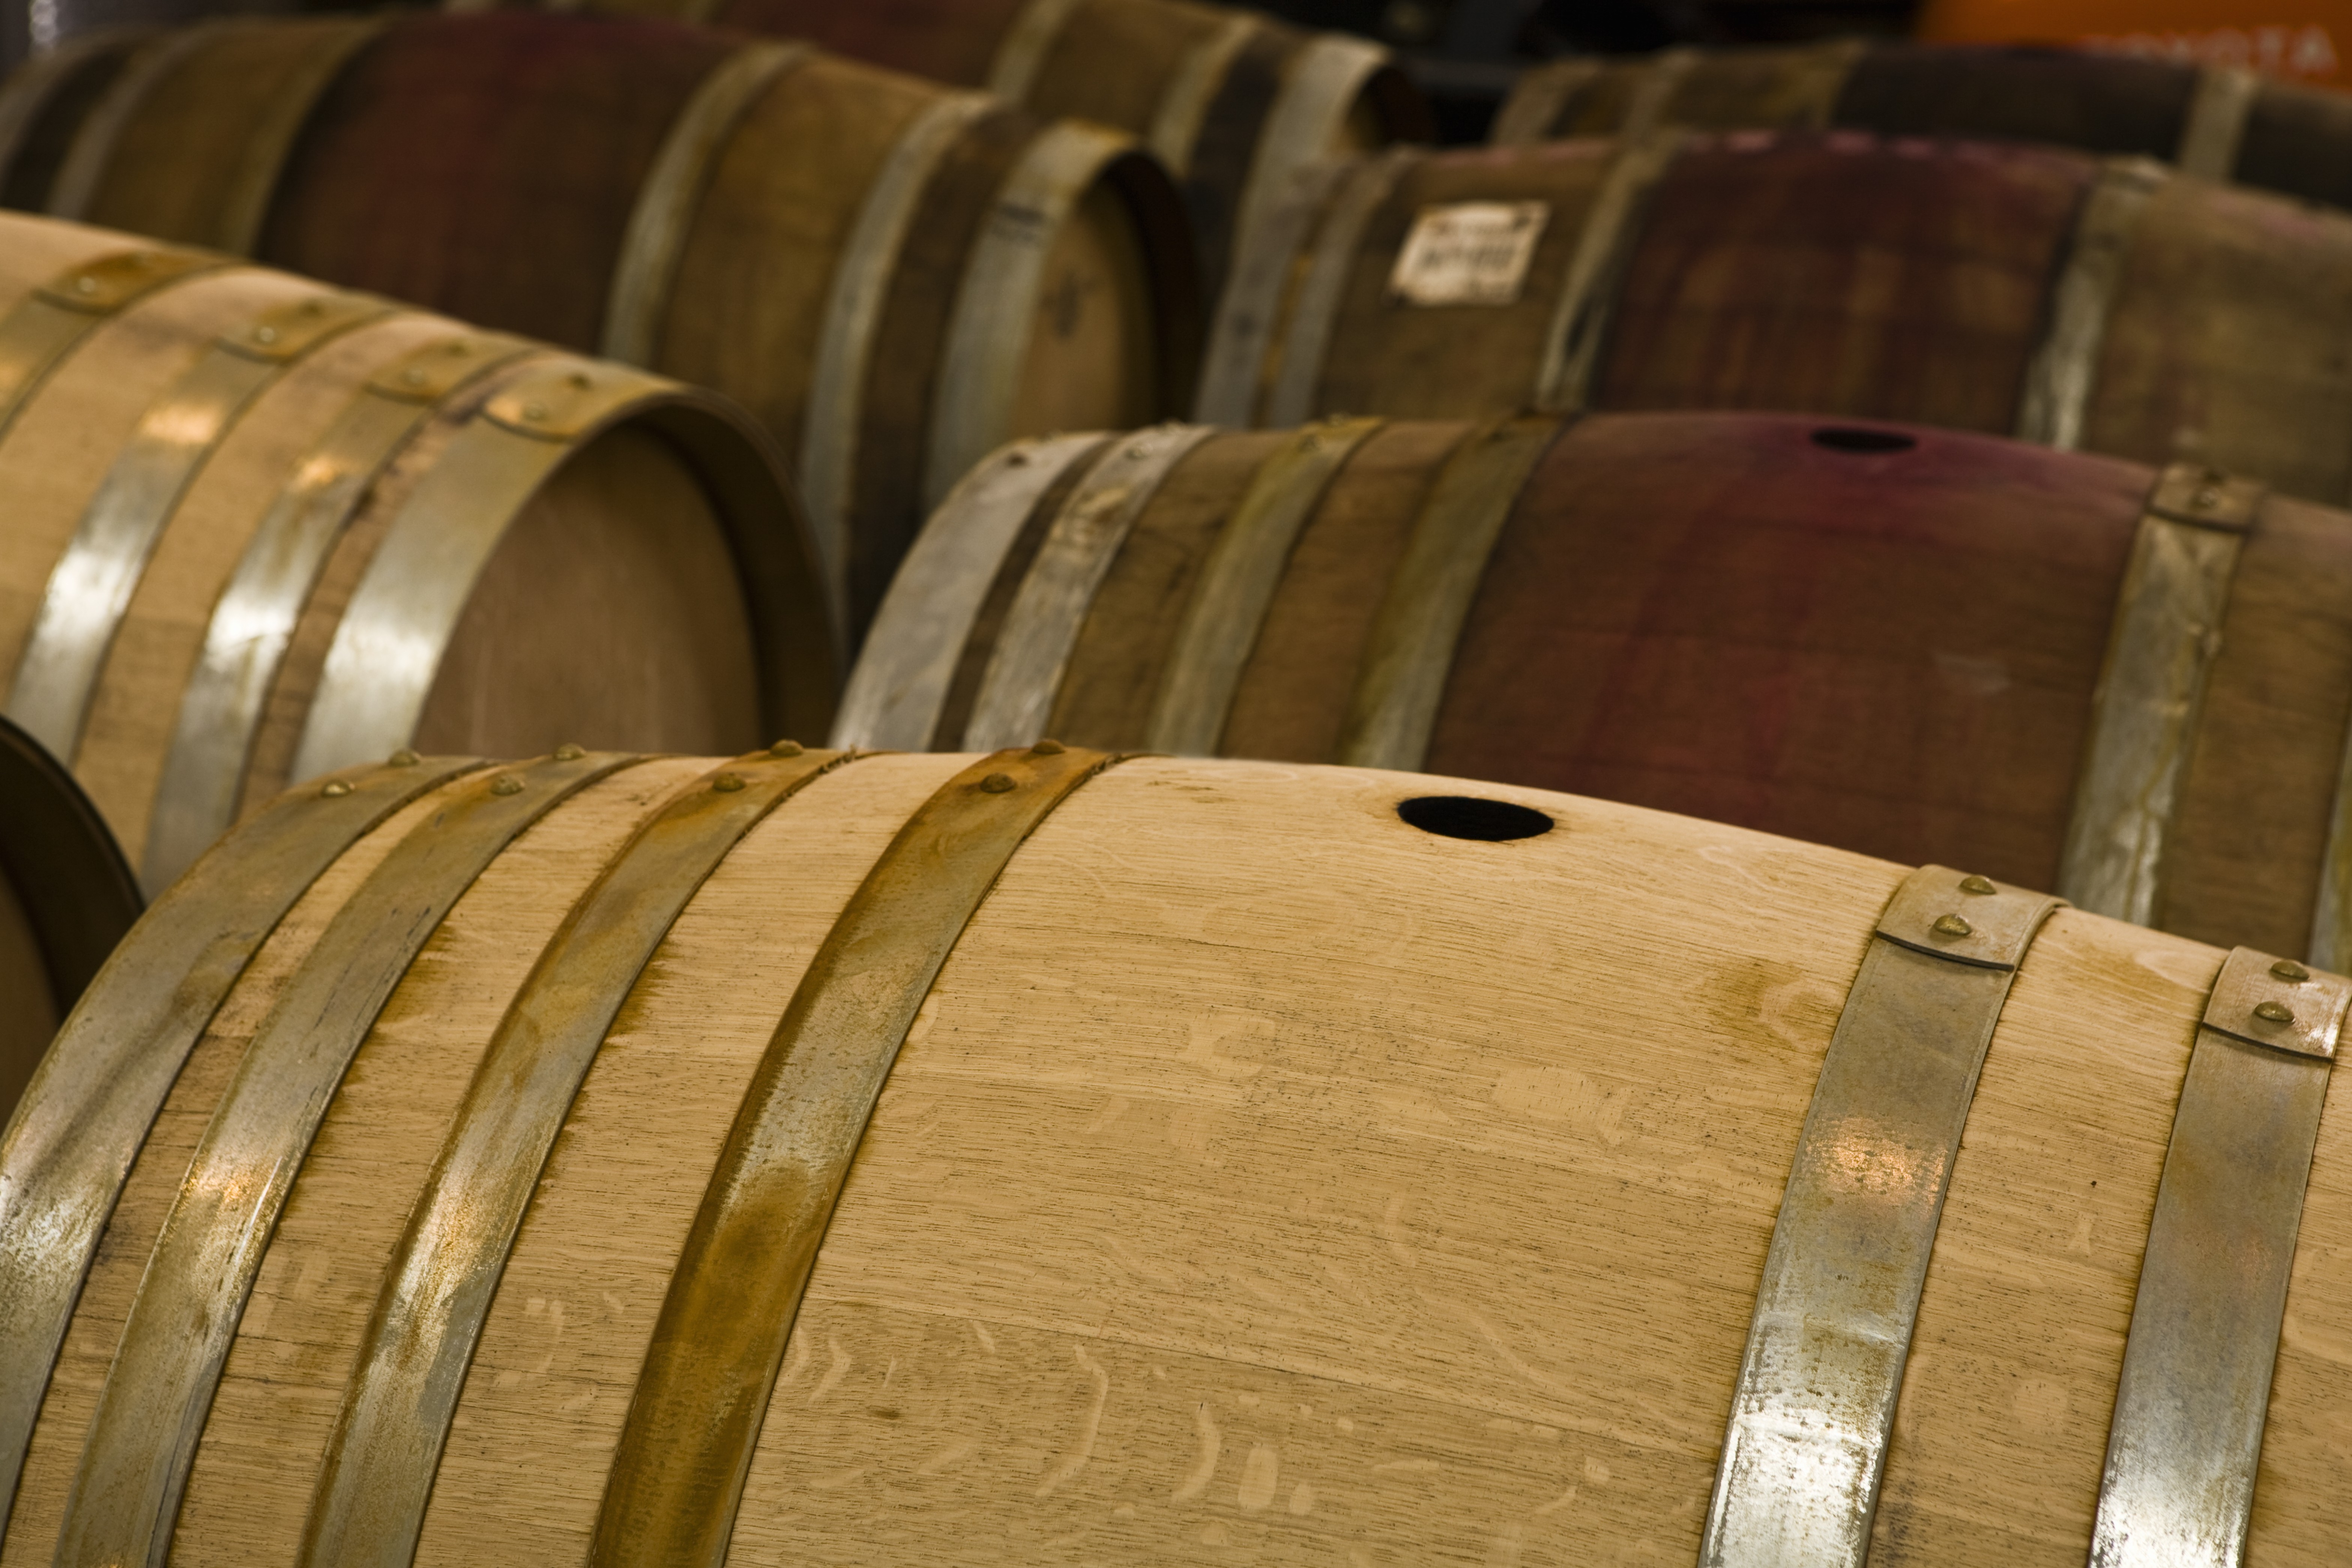 Wine barrels in storage